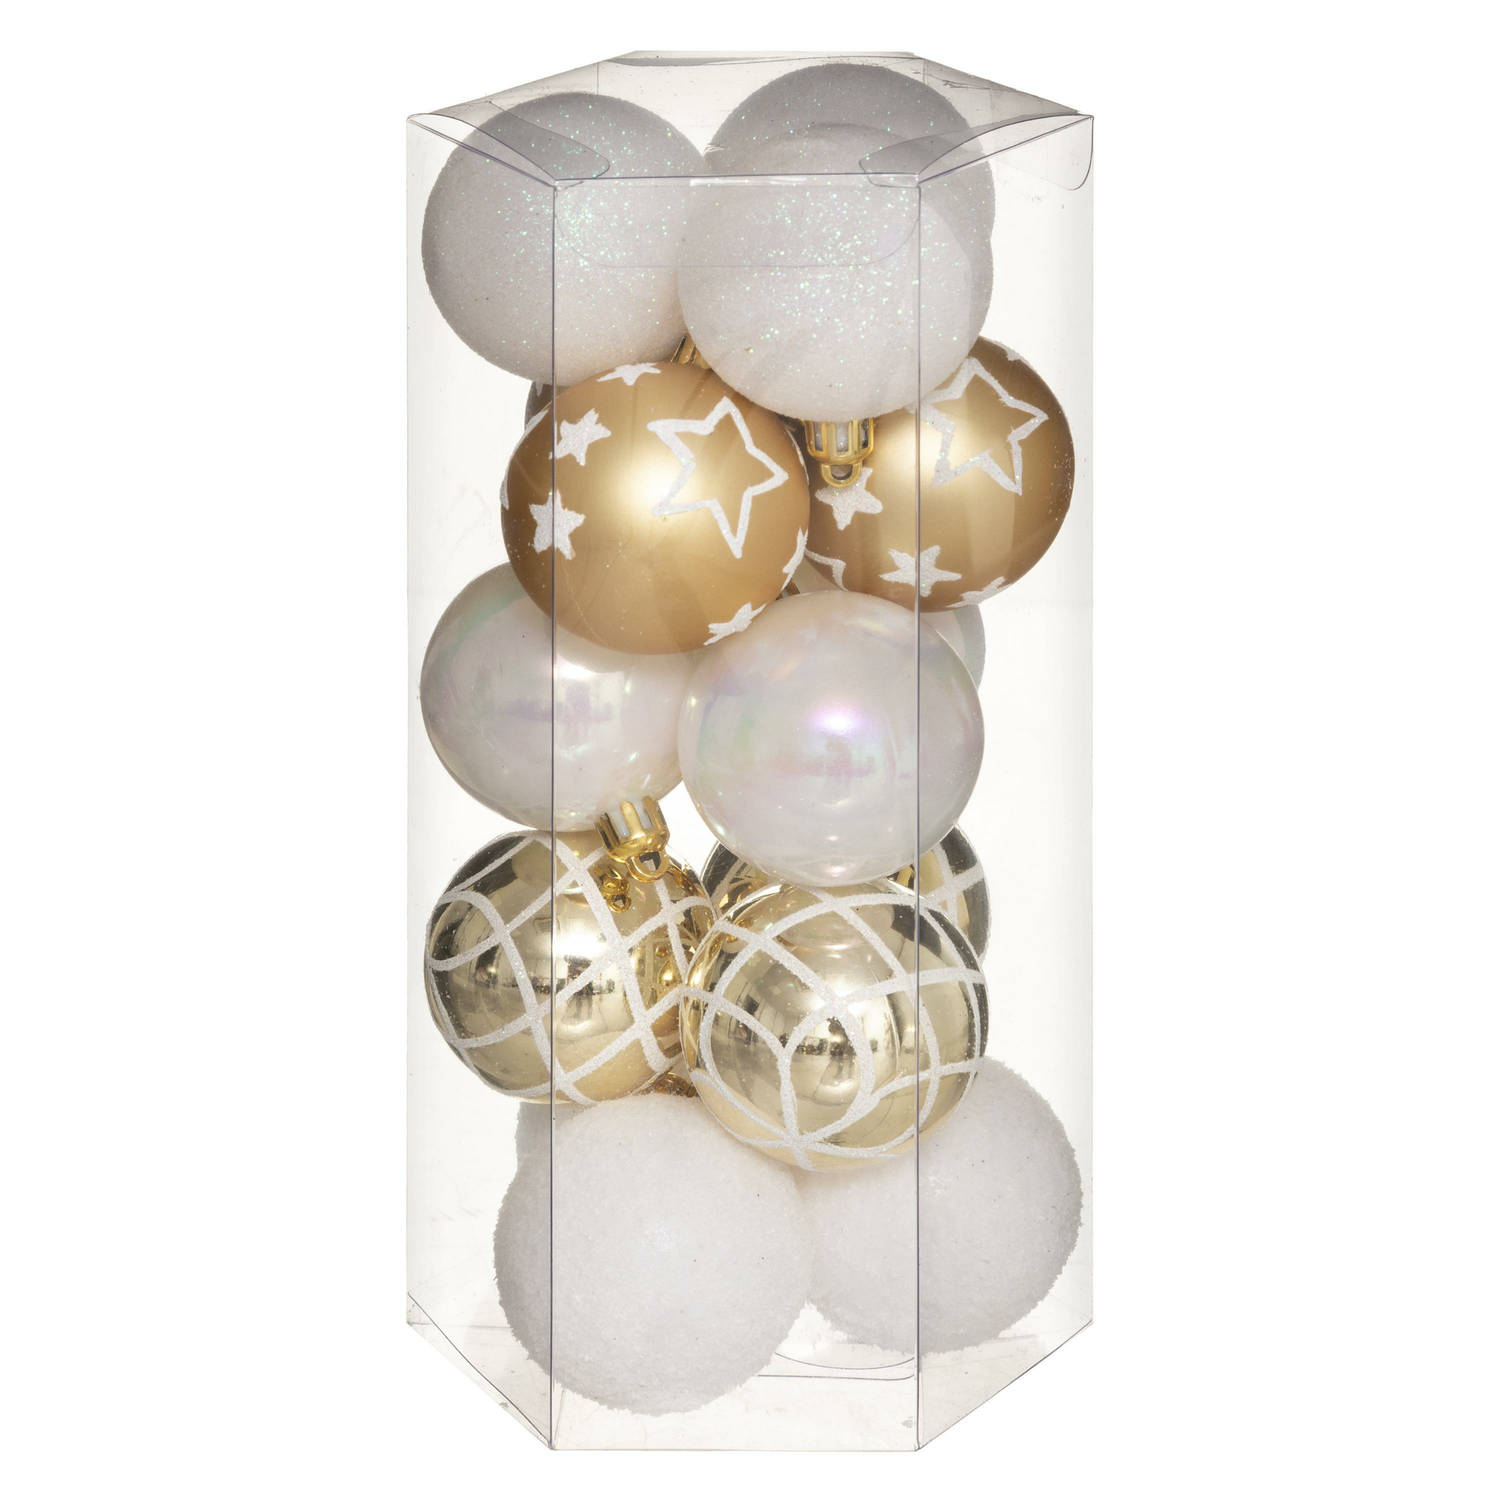 15x stuks kerstballen mix wit/goud gedecoreerd kunststof 5 cm - Kerstbal